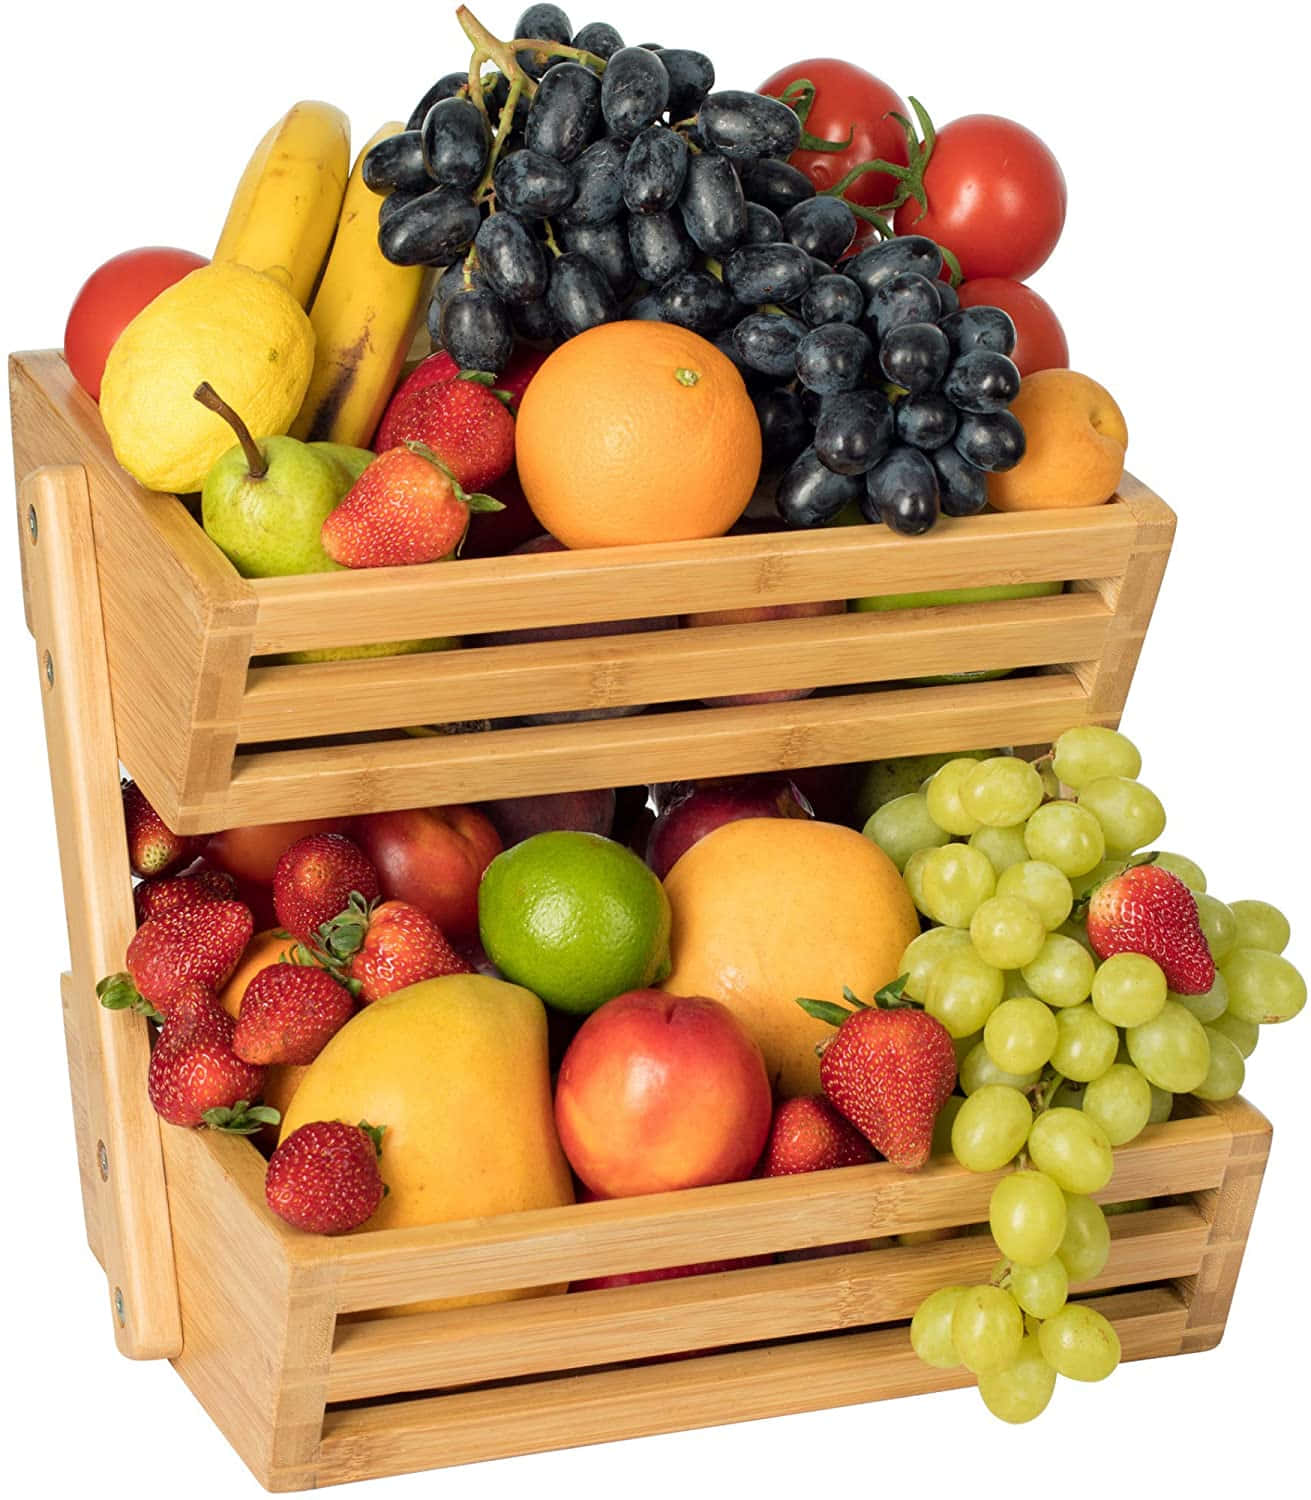 Bienvenido/aa Fruits Basket